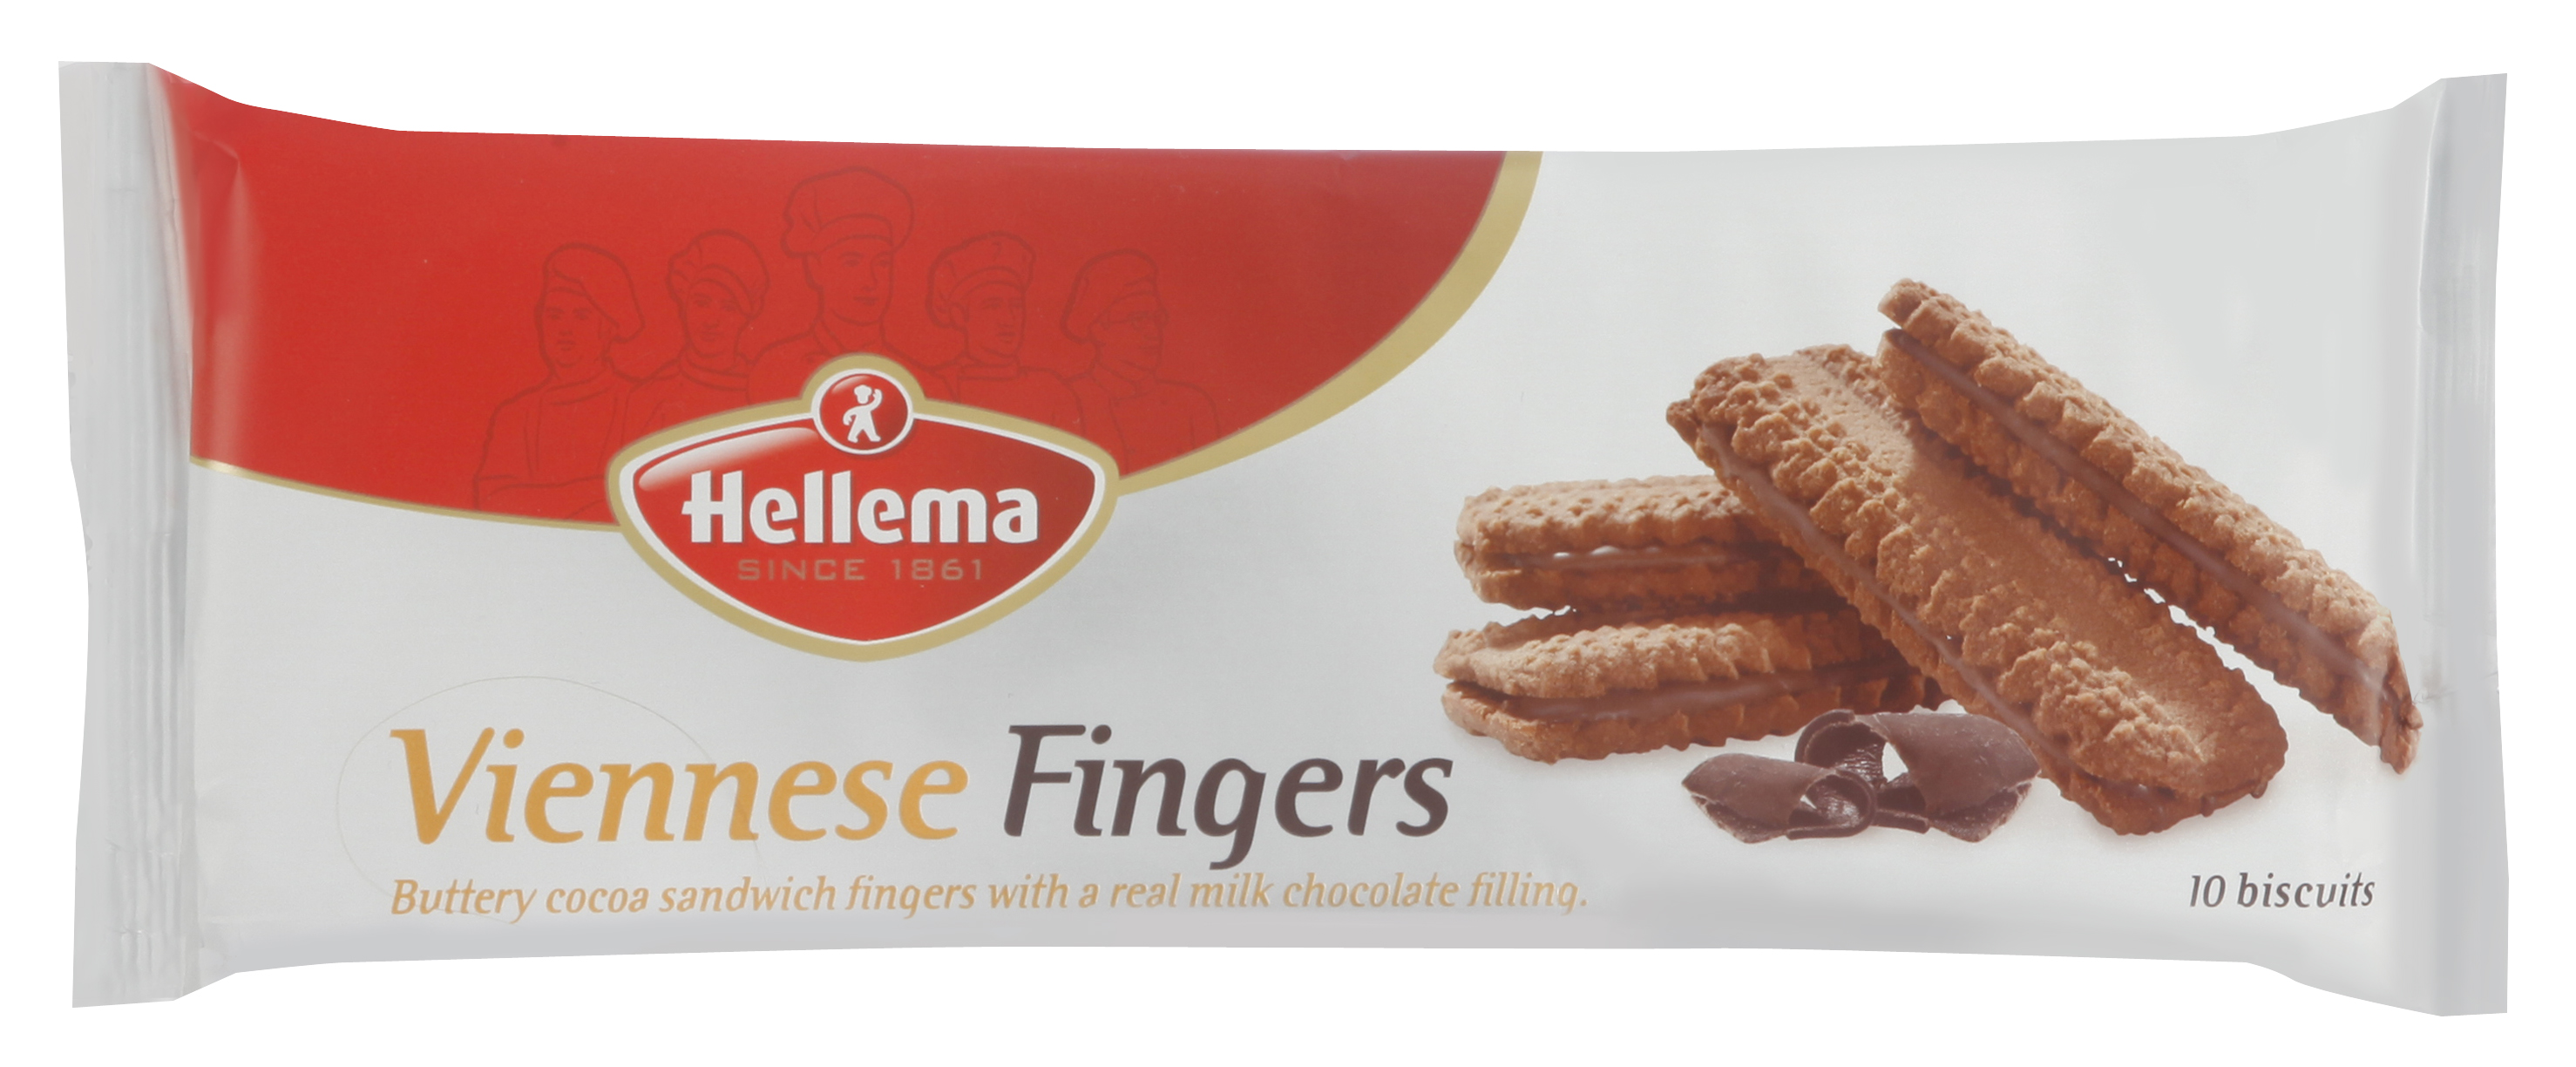 vienna fingers ingredients